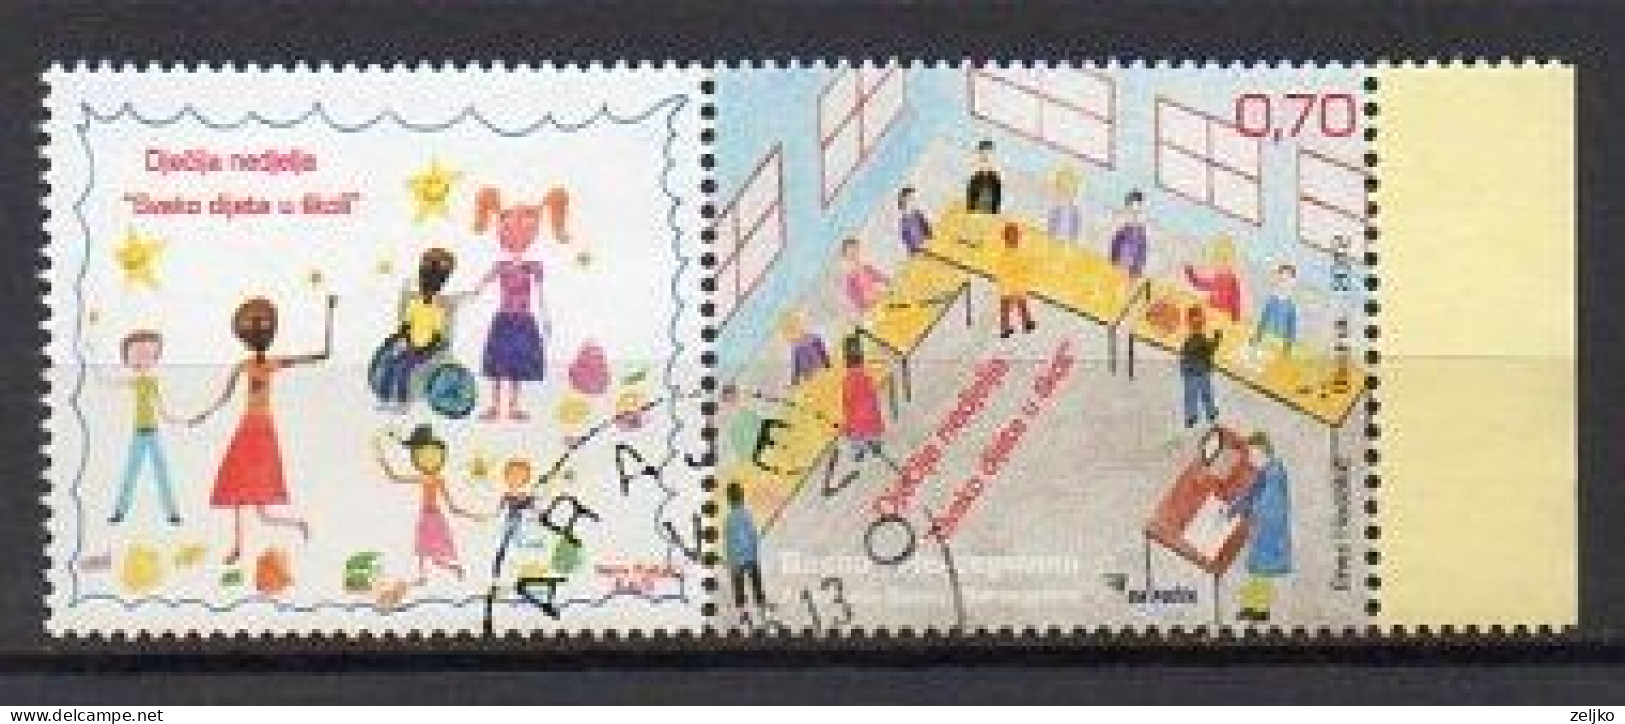 Bosnia And Herzegovina, Sarajevo 2012, Used, Michel 608 Stamp + Vignette, Children - Bosnia Herzegovina